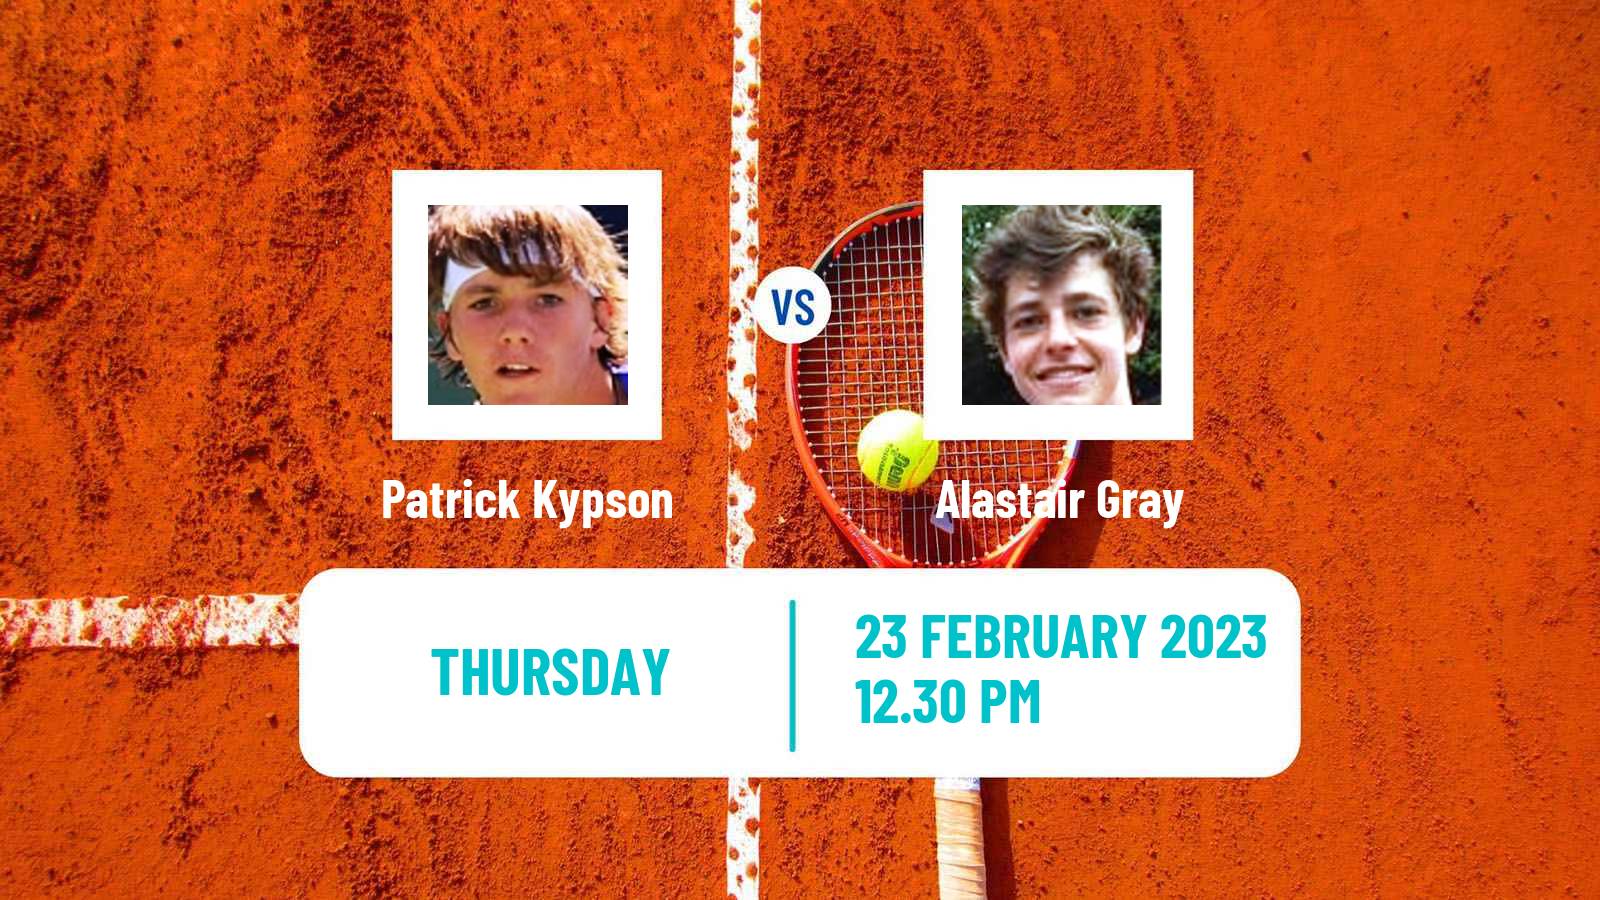 Tennis ATP Challenger Patrick Kypson - Alastair Gray